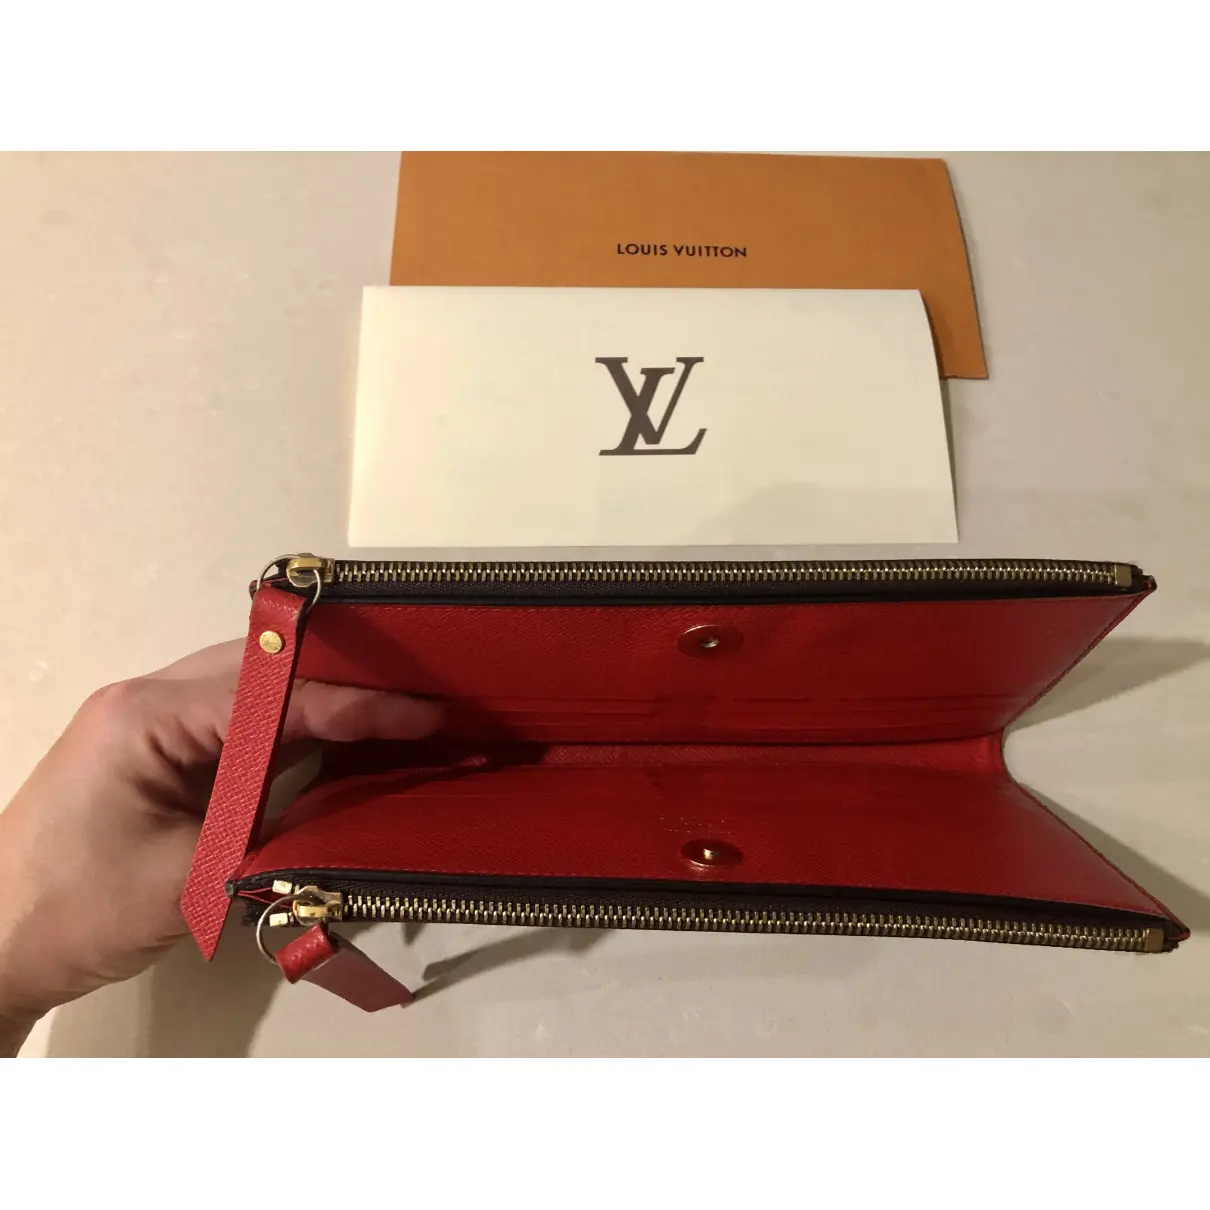 Buy Louis Vuitton Adèle leather wallet online